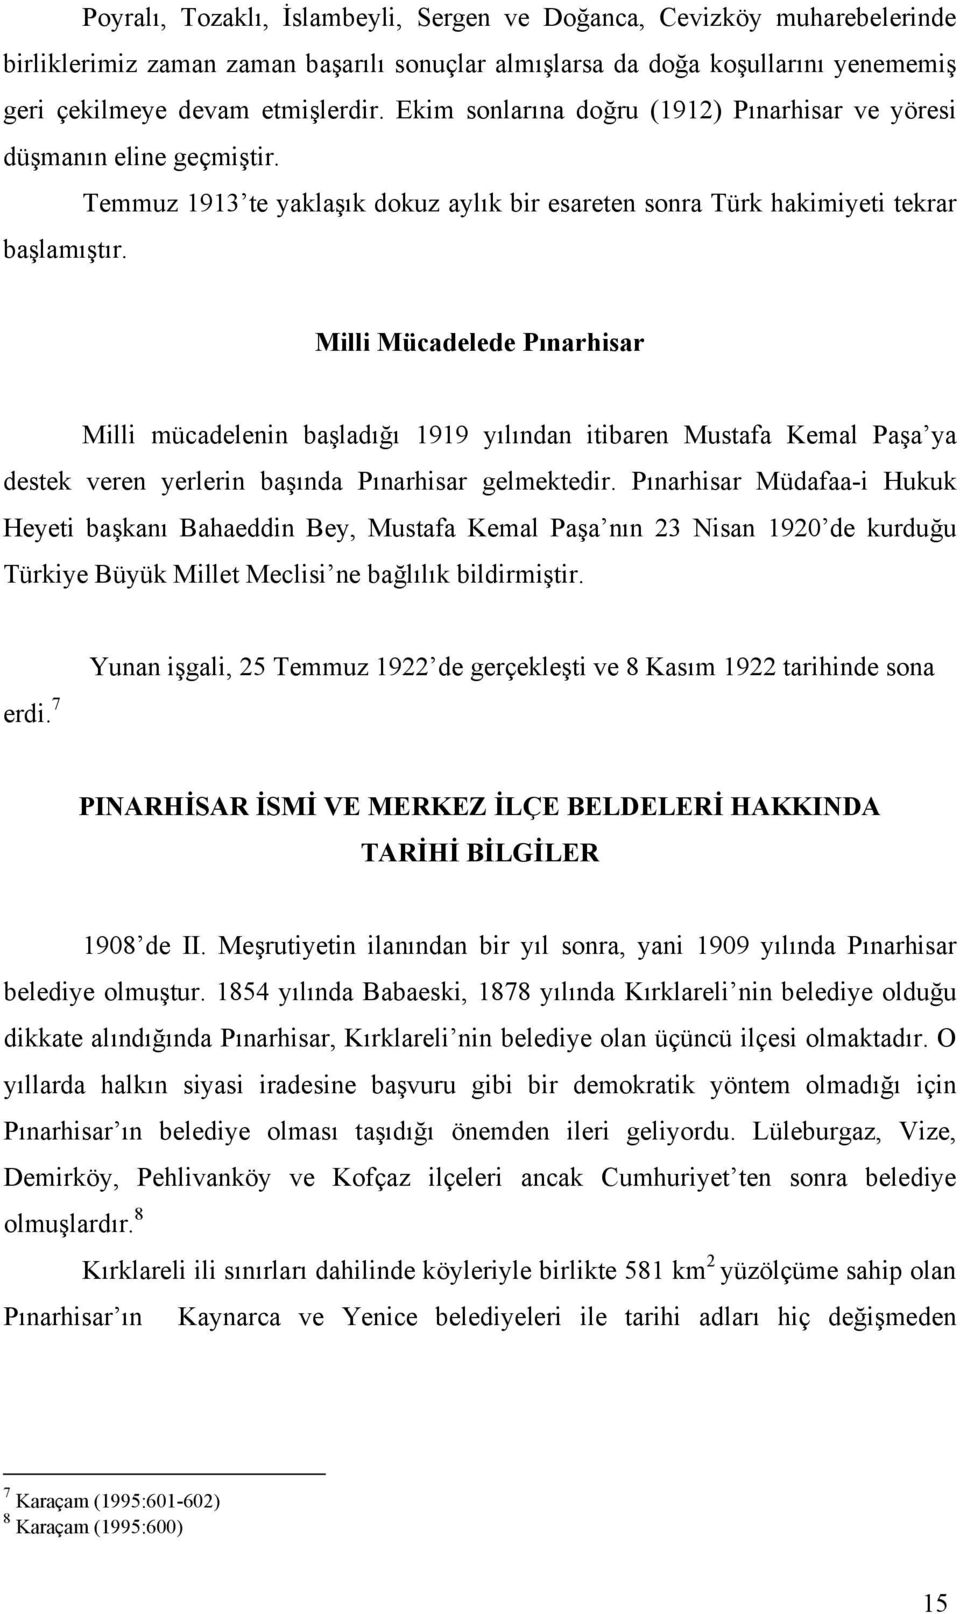 Milli Mücadelede Pınarhisar Milli mücadelenin başladığı 1919 yılından itibaren Mustafa Kemal Paşa ya destek veren yerlerin başında Pınarhisar gelmektedir.